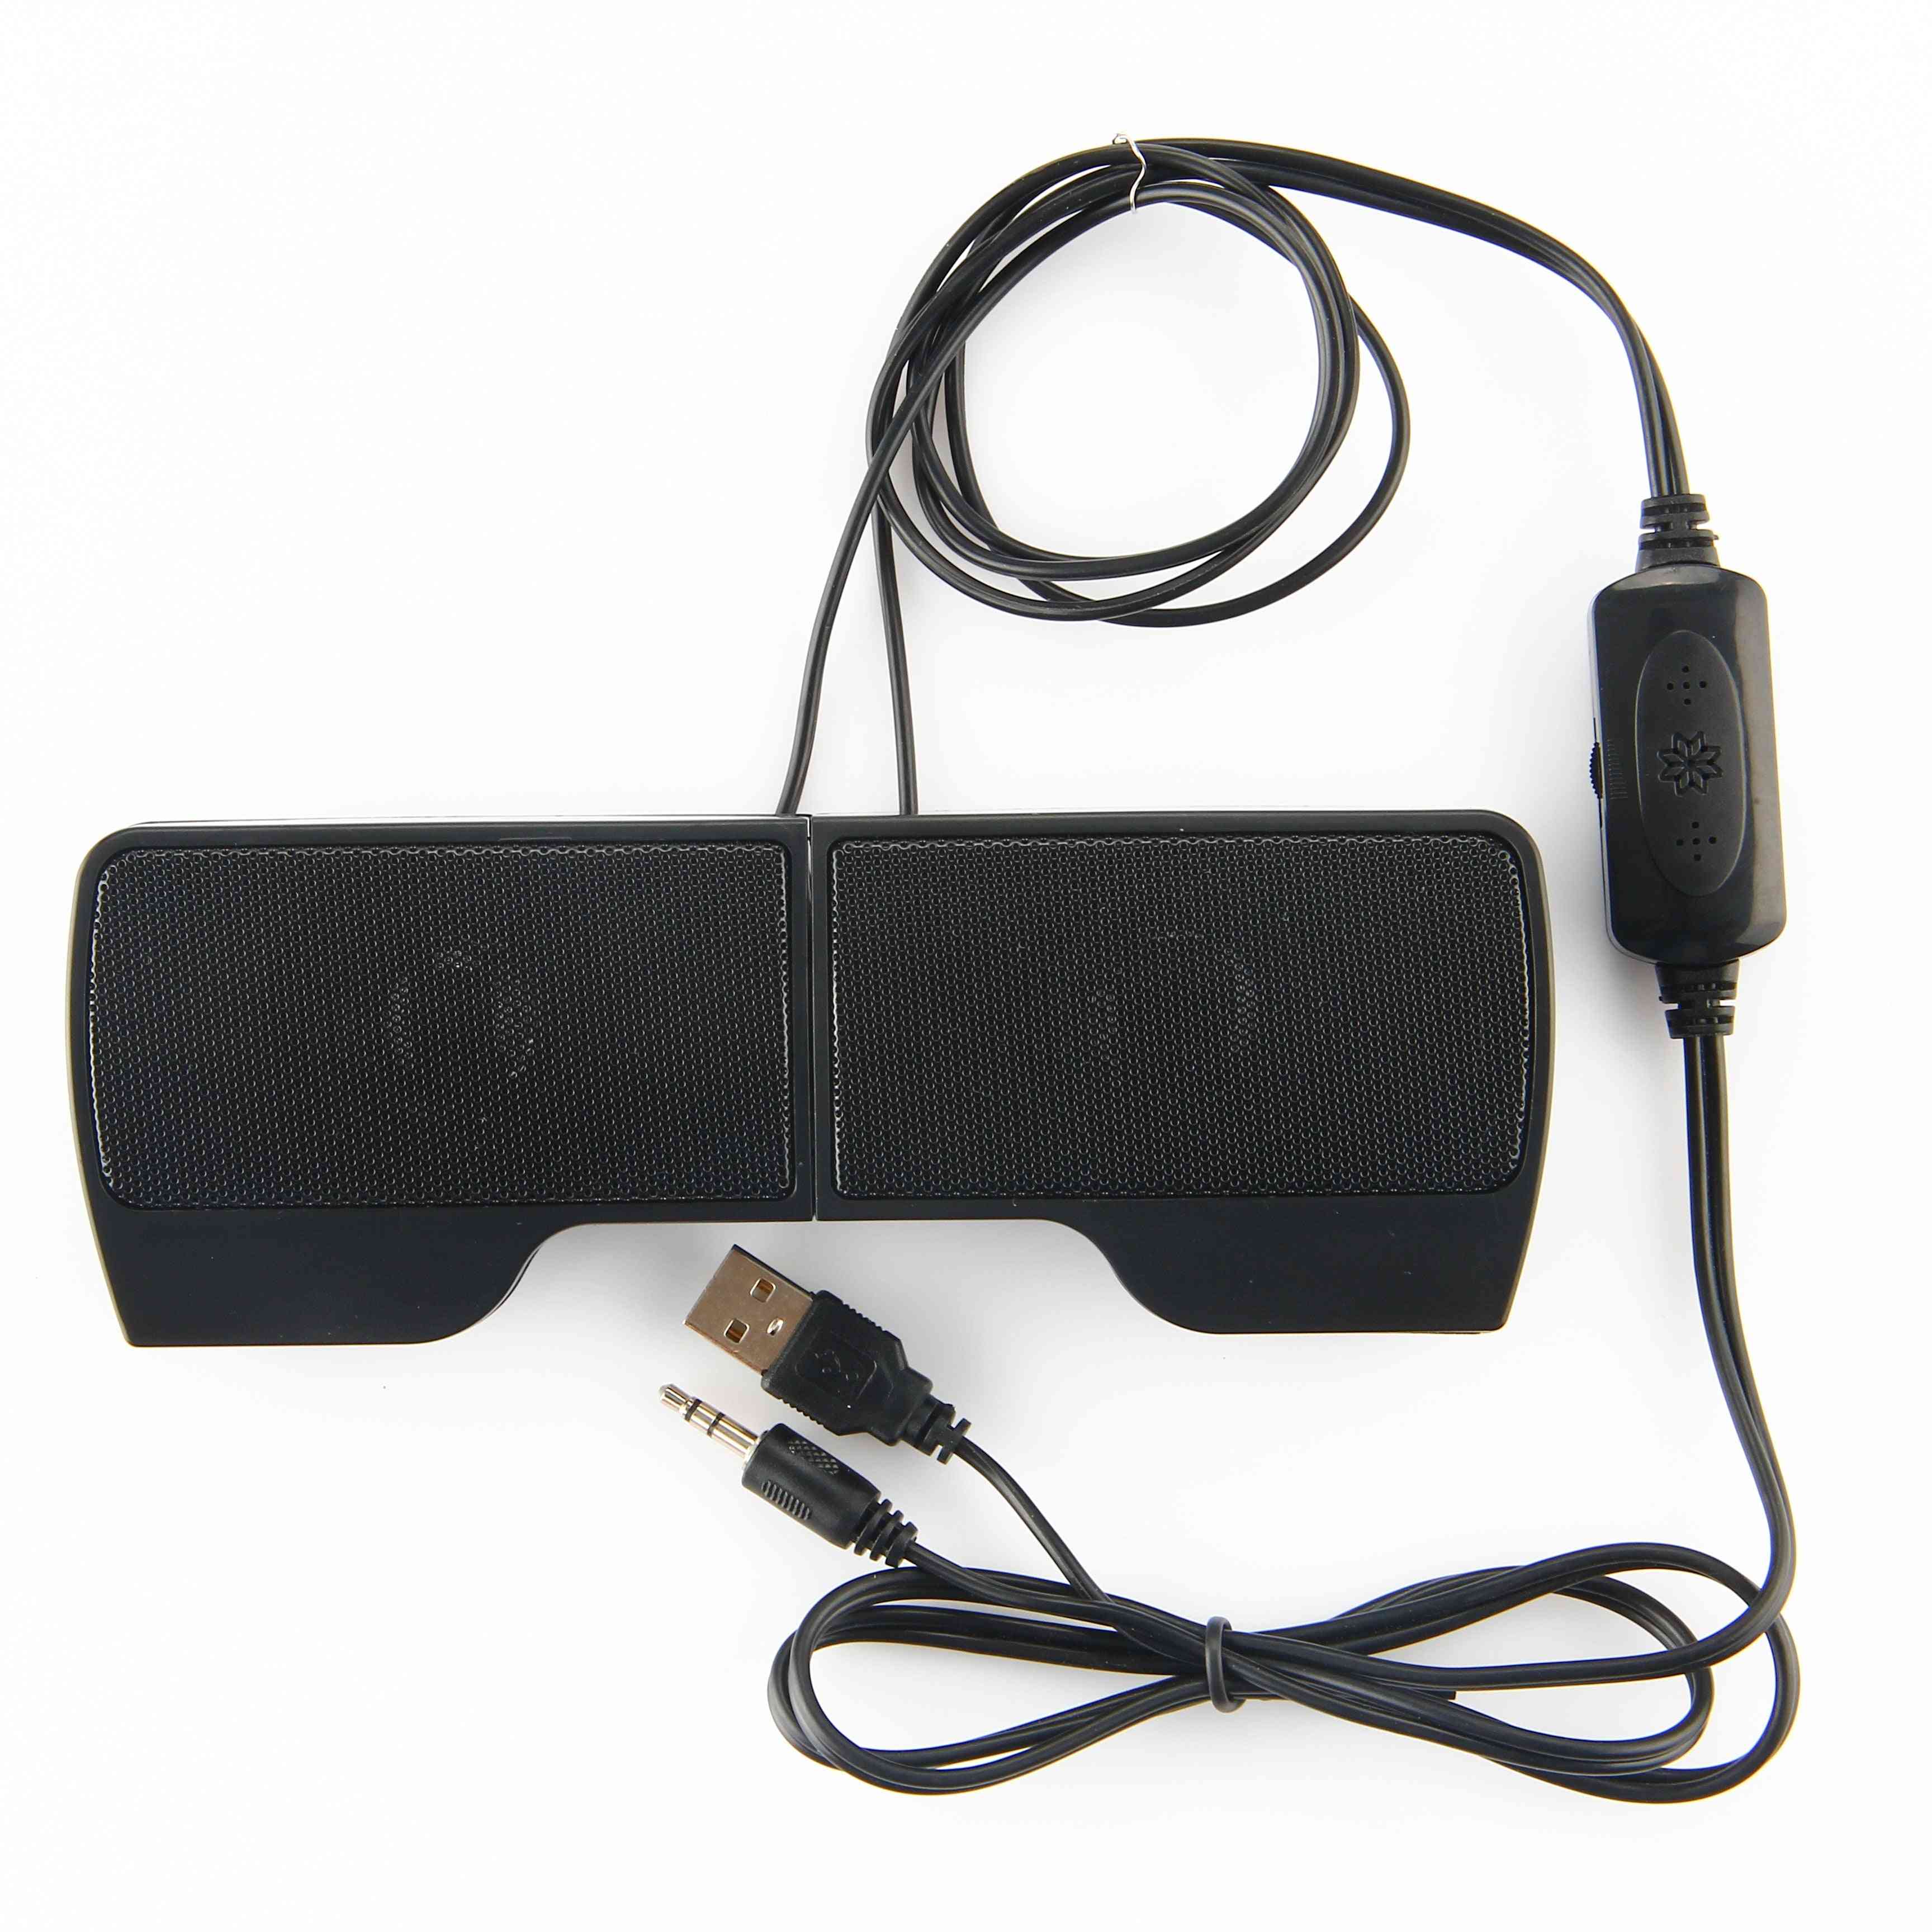 Mini alto-falante estéreo laptop 2.0 usb 3,5 mm controlador com fio, music player, alto-falante clip-on soundbar para notebook / pc (preto) -